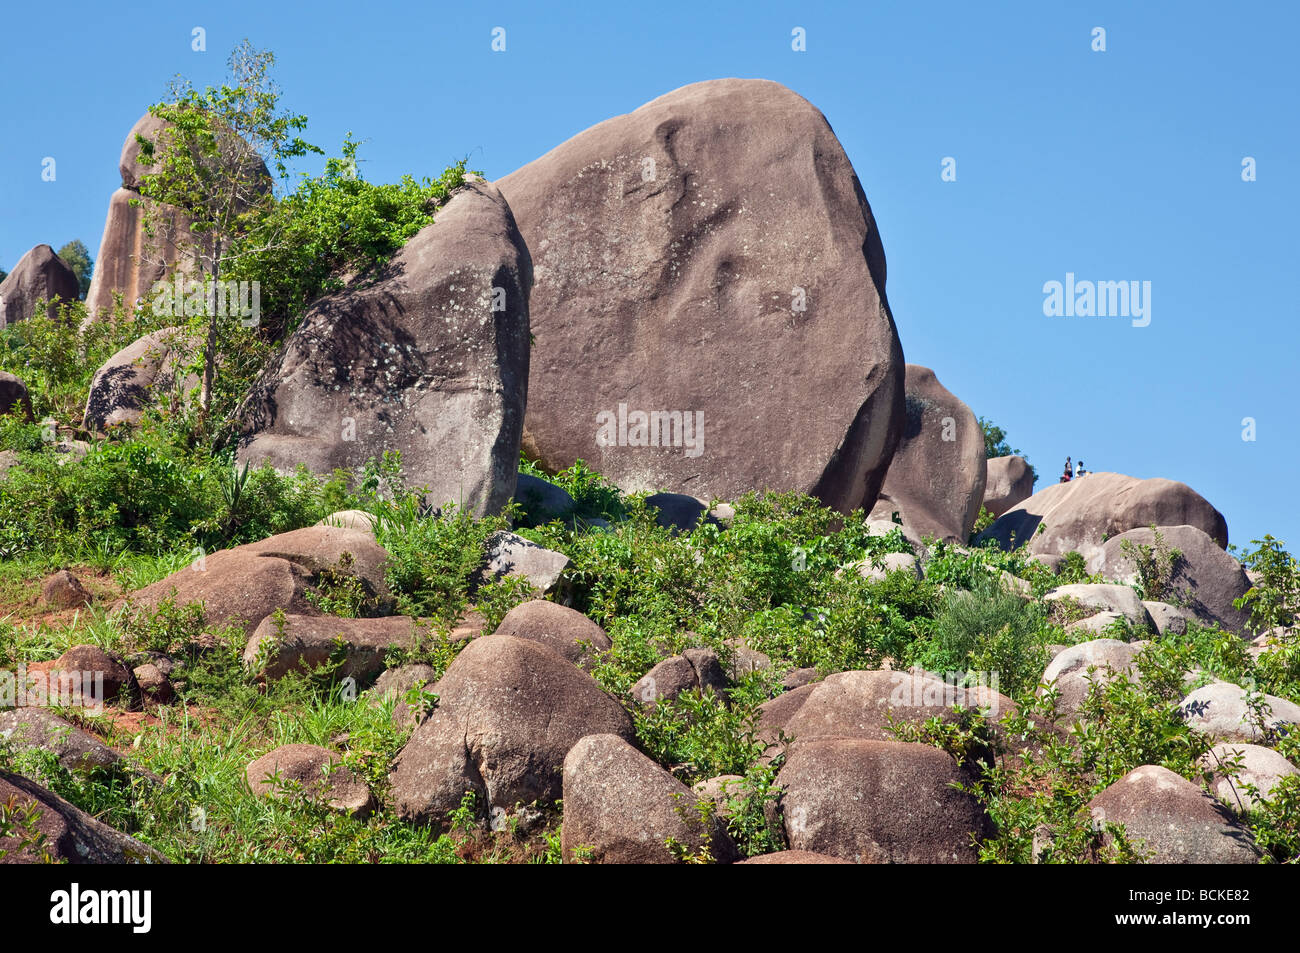 Kenya. Los niños juegan entre gigantescas rocas de granito en el oeste de Kenia. Foto de stock